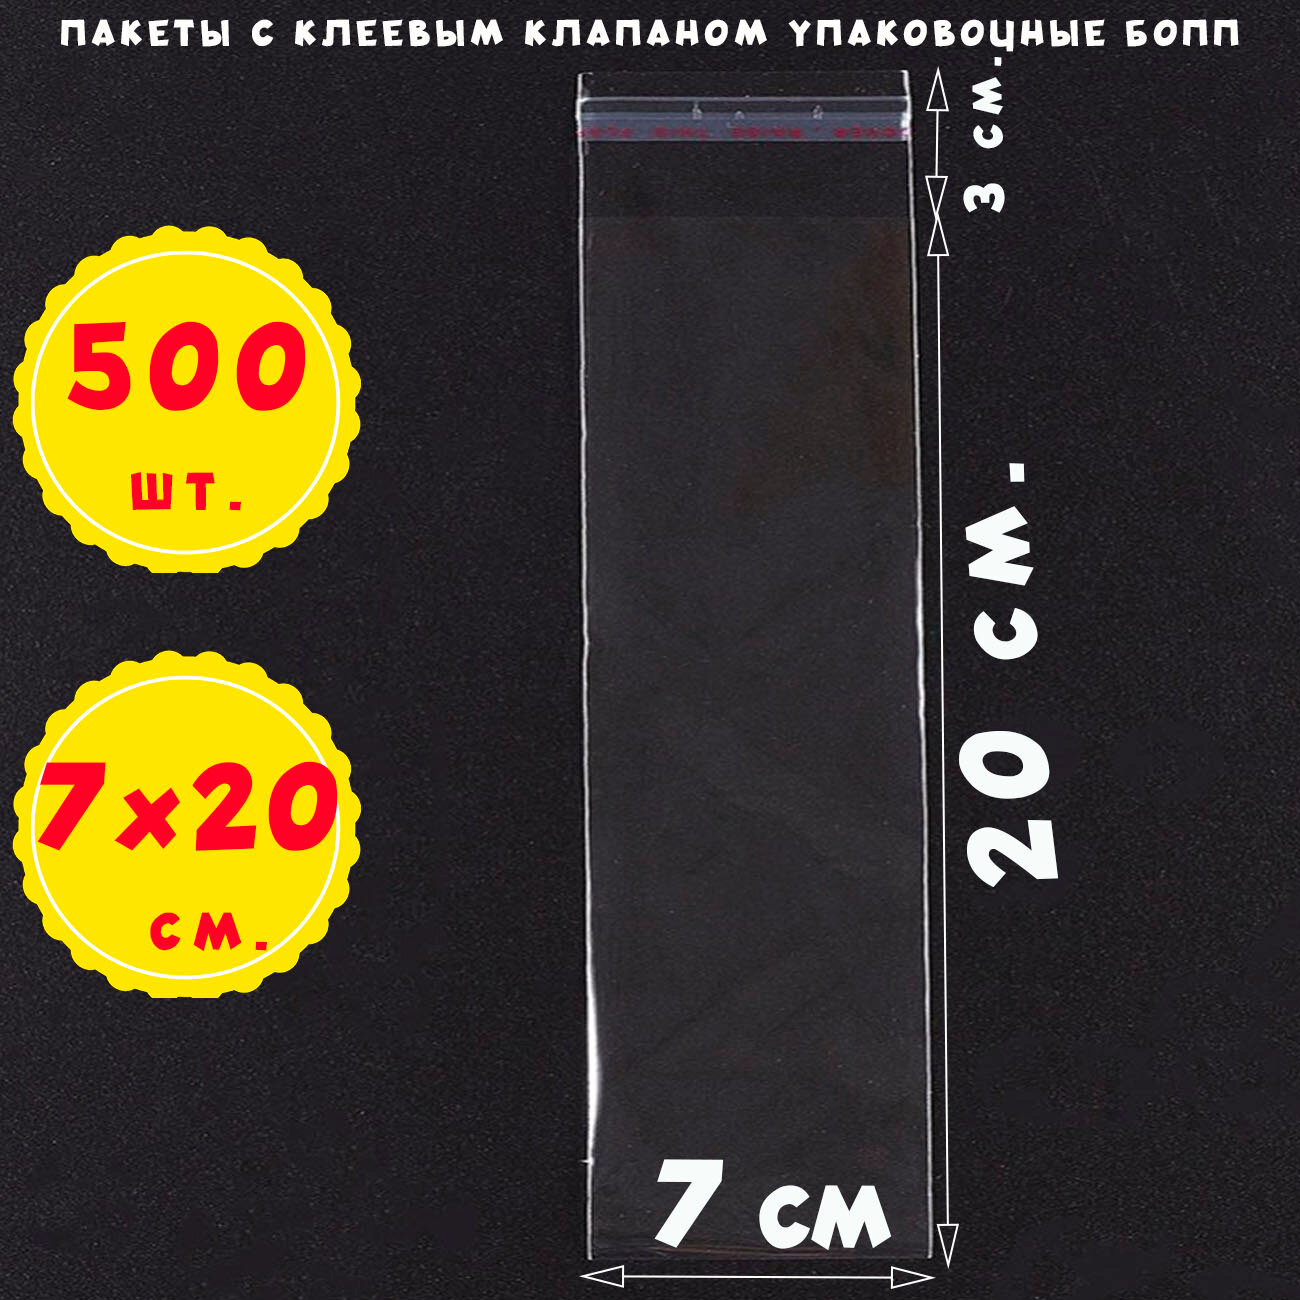 500 пакетов 7х20+3 см прозрачных с клеевым клапаном для упаковки из пленки бопп